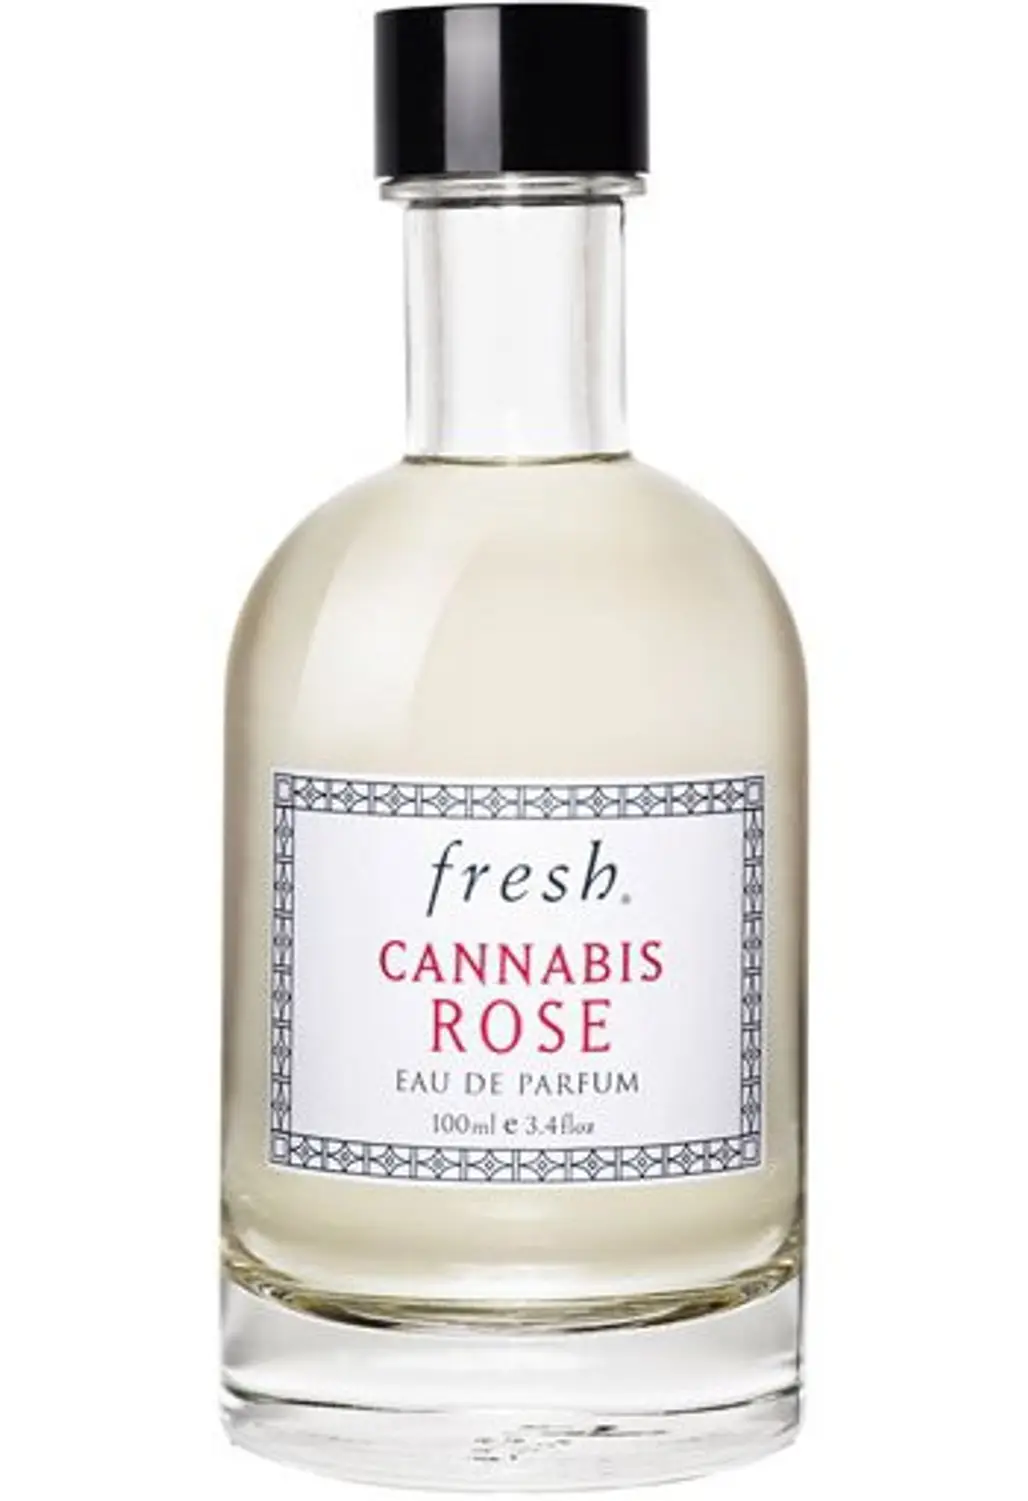 Fresh Cannabis Rose Eau De Parfum